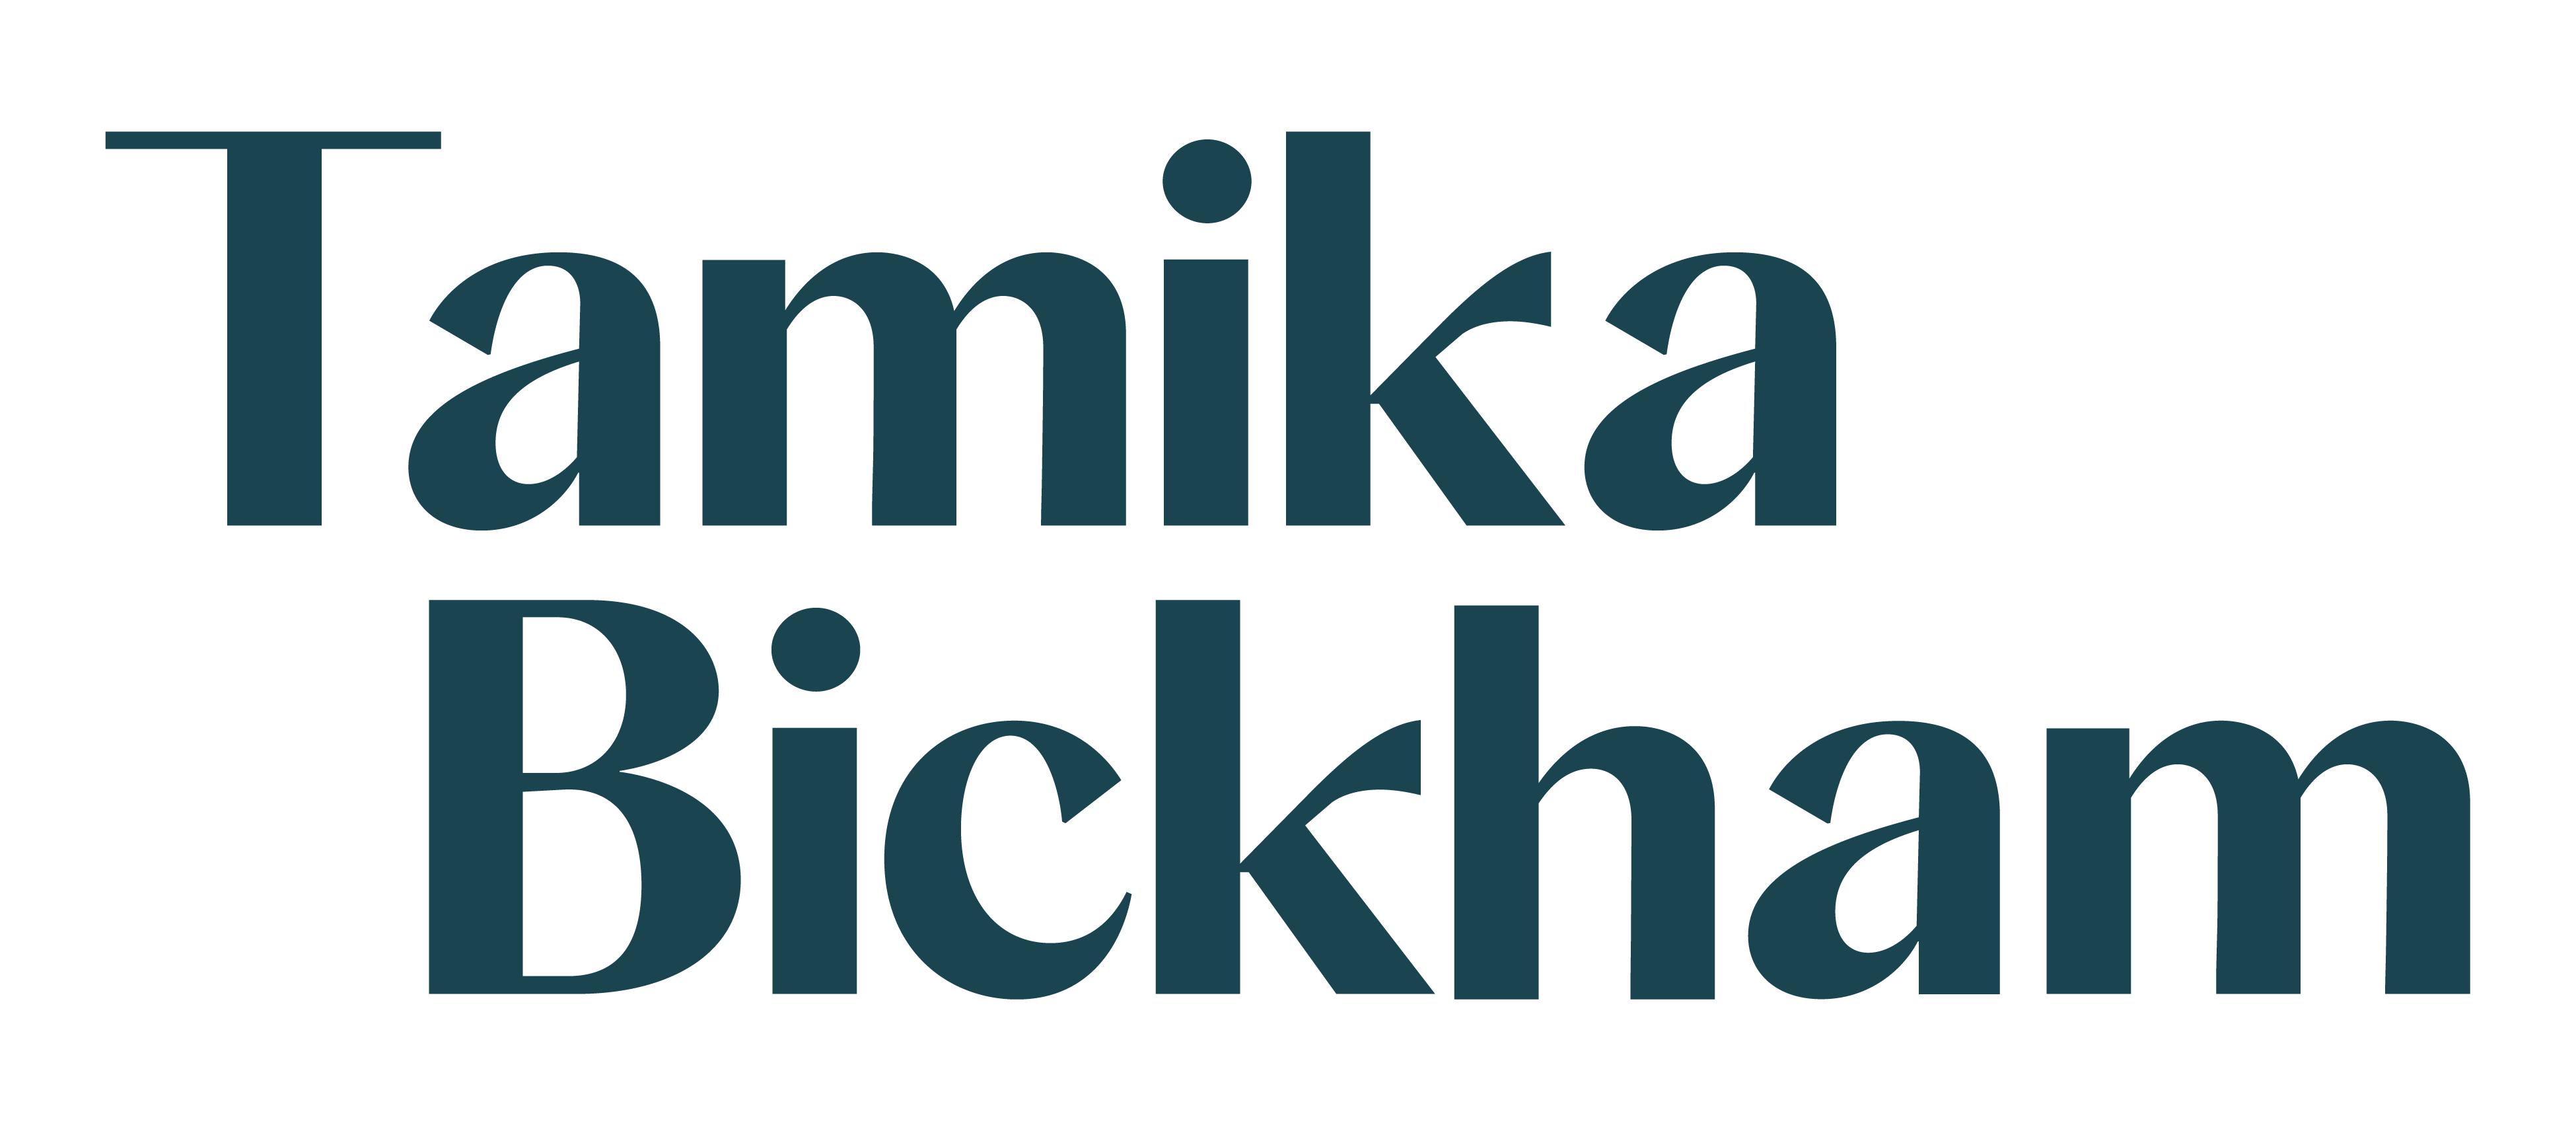 Tamika Bickham